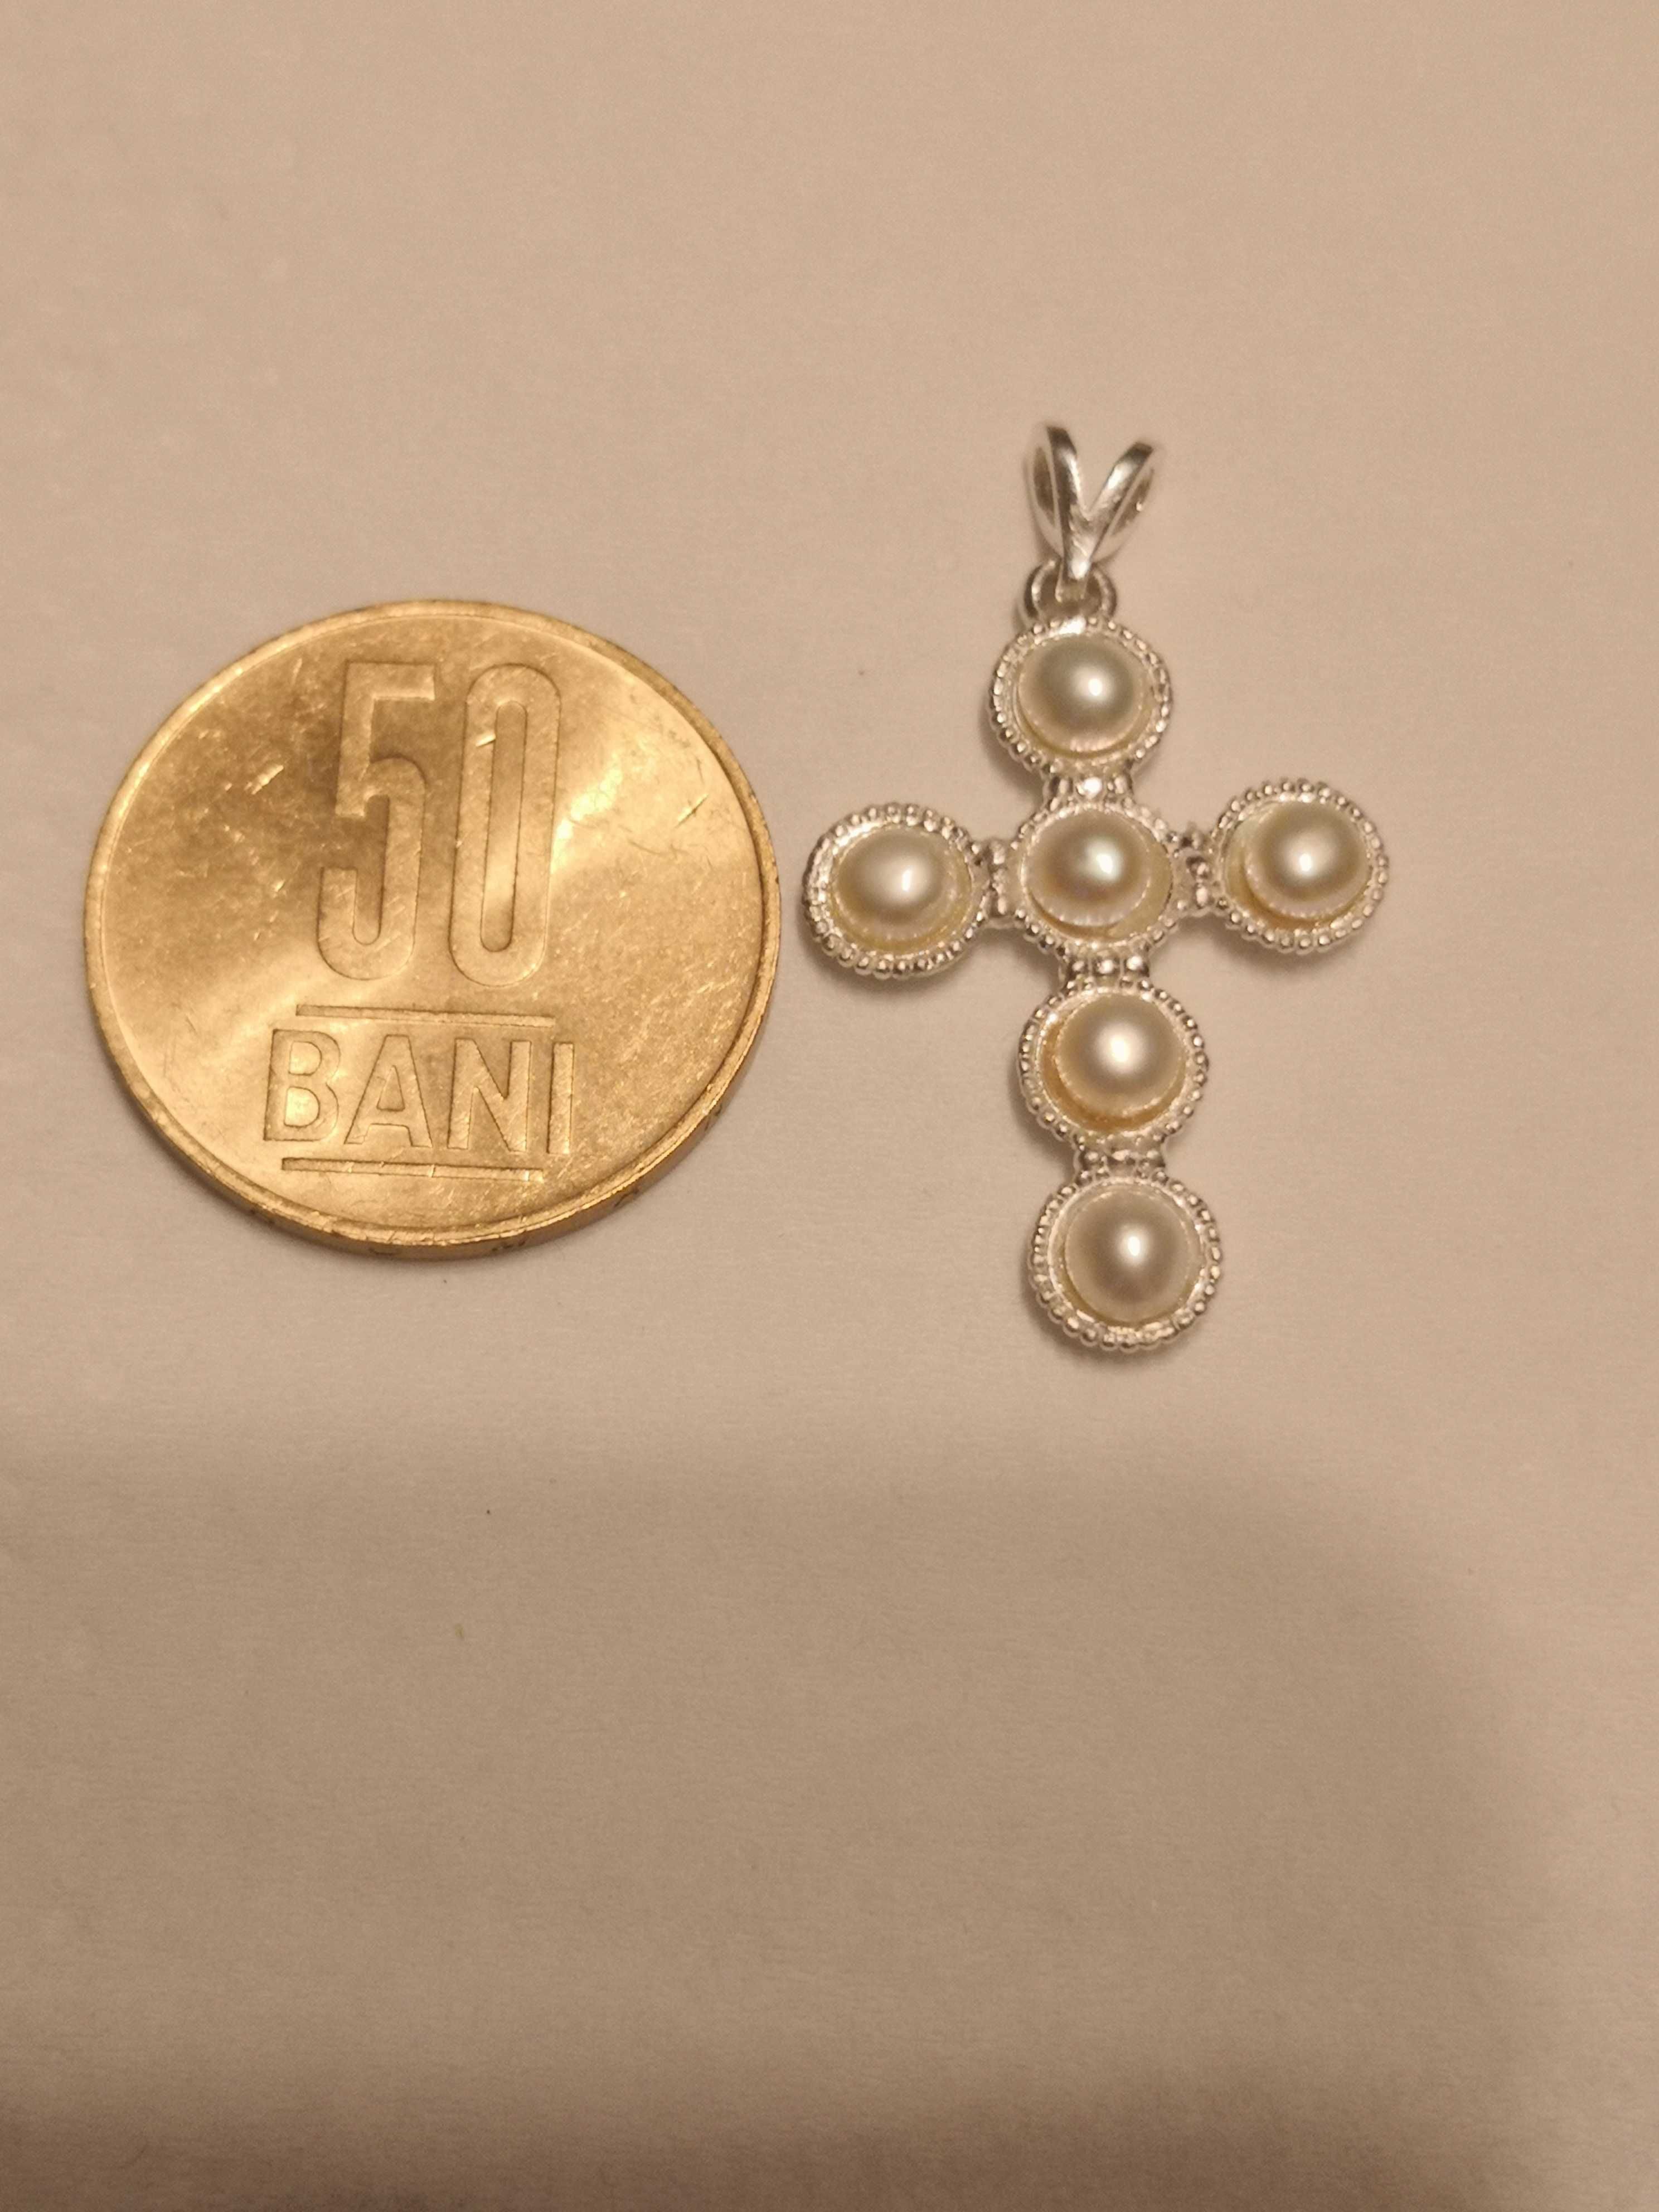 Pandantiv cruce argint perle naturale